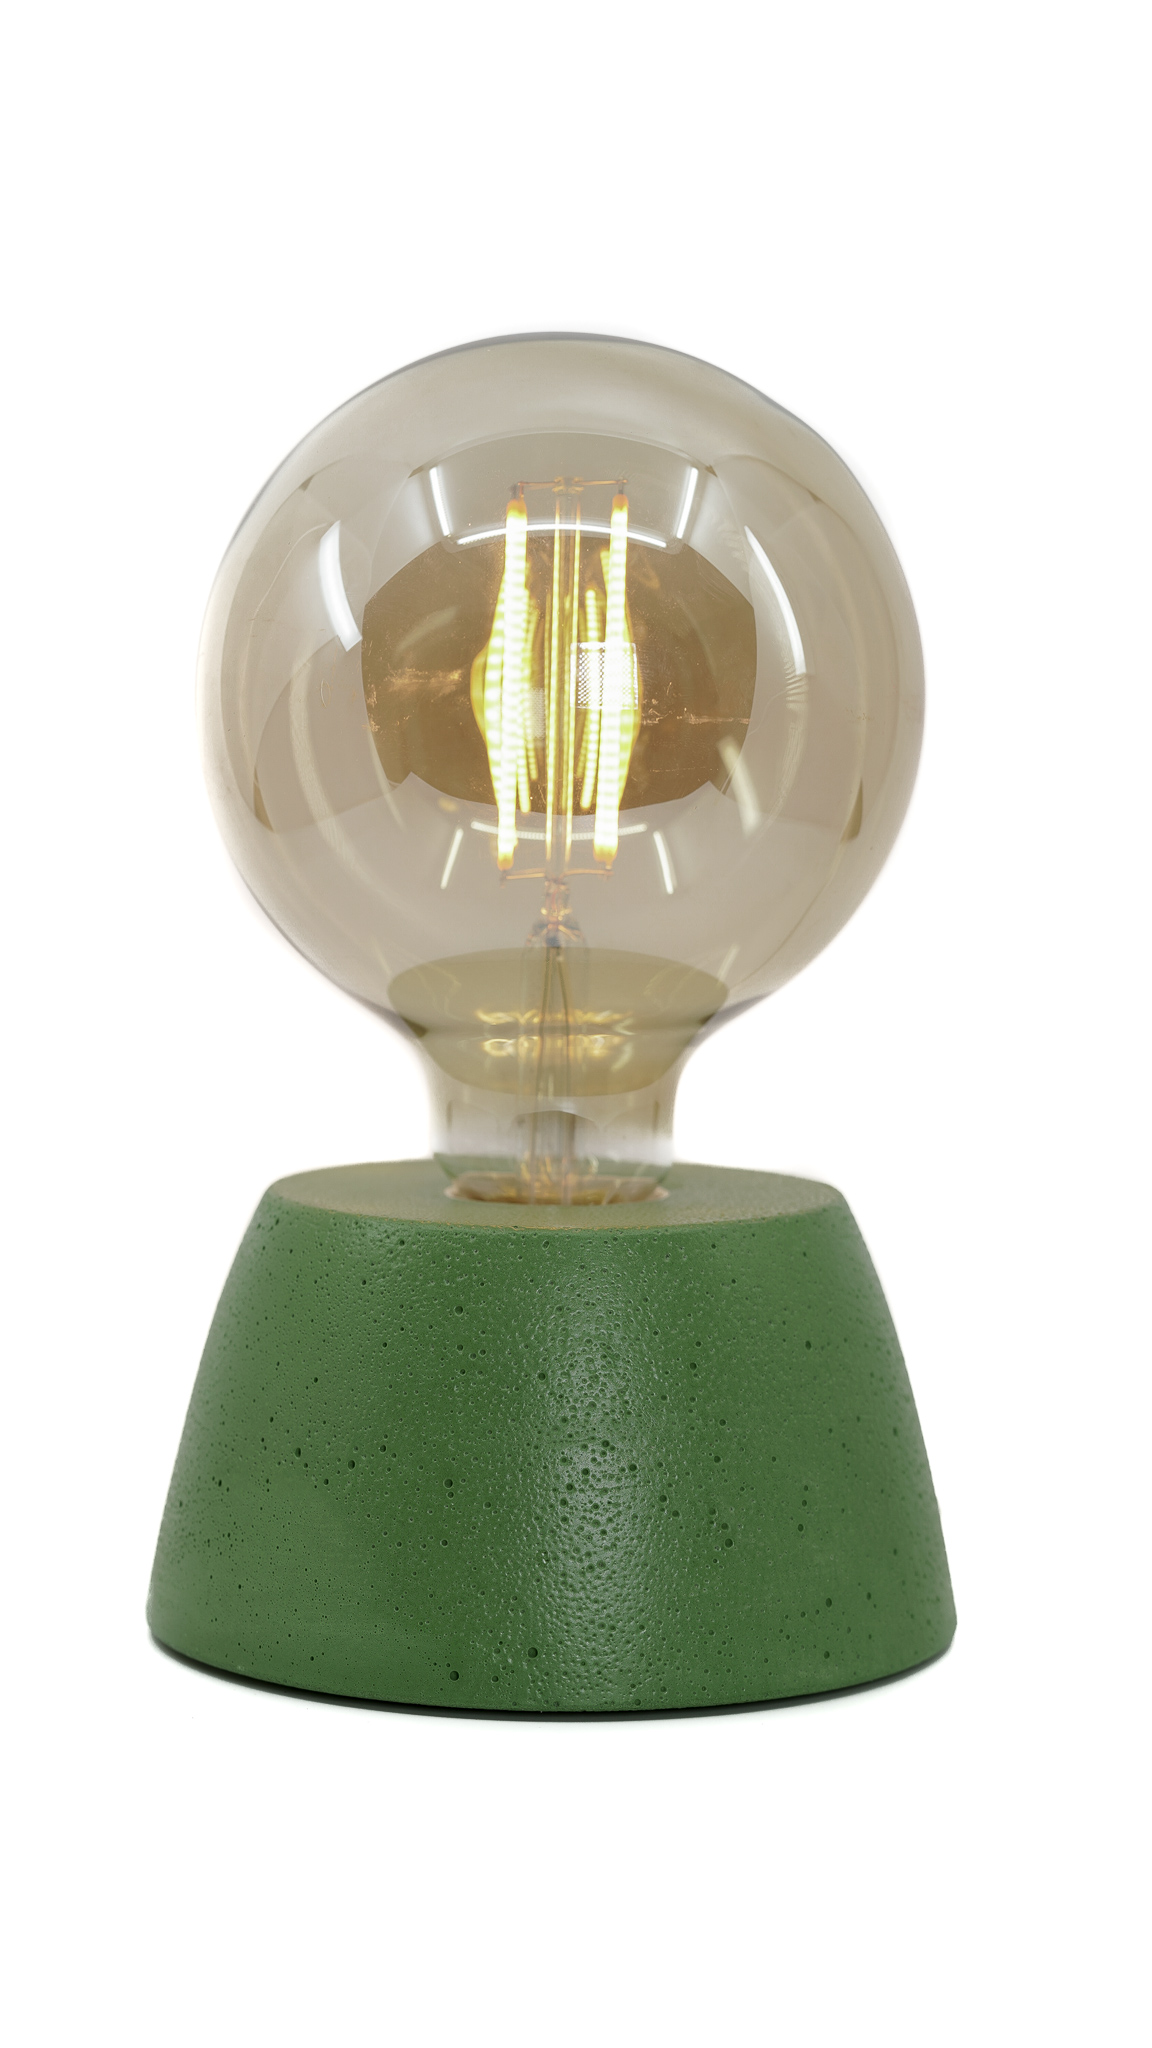 Lampe dôme en béton vert fabrication artisanale